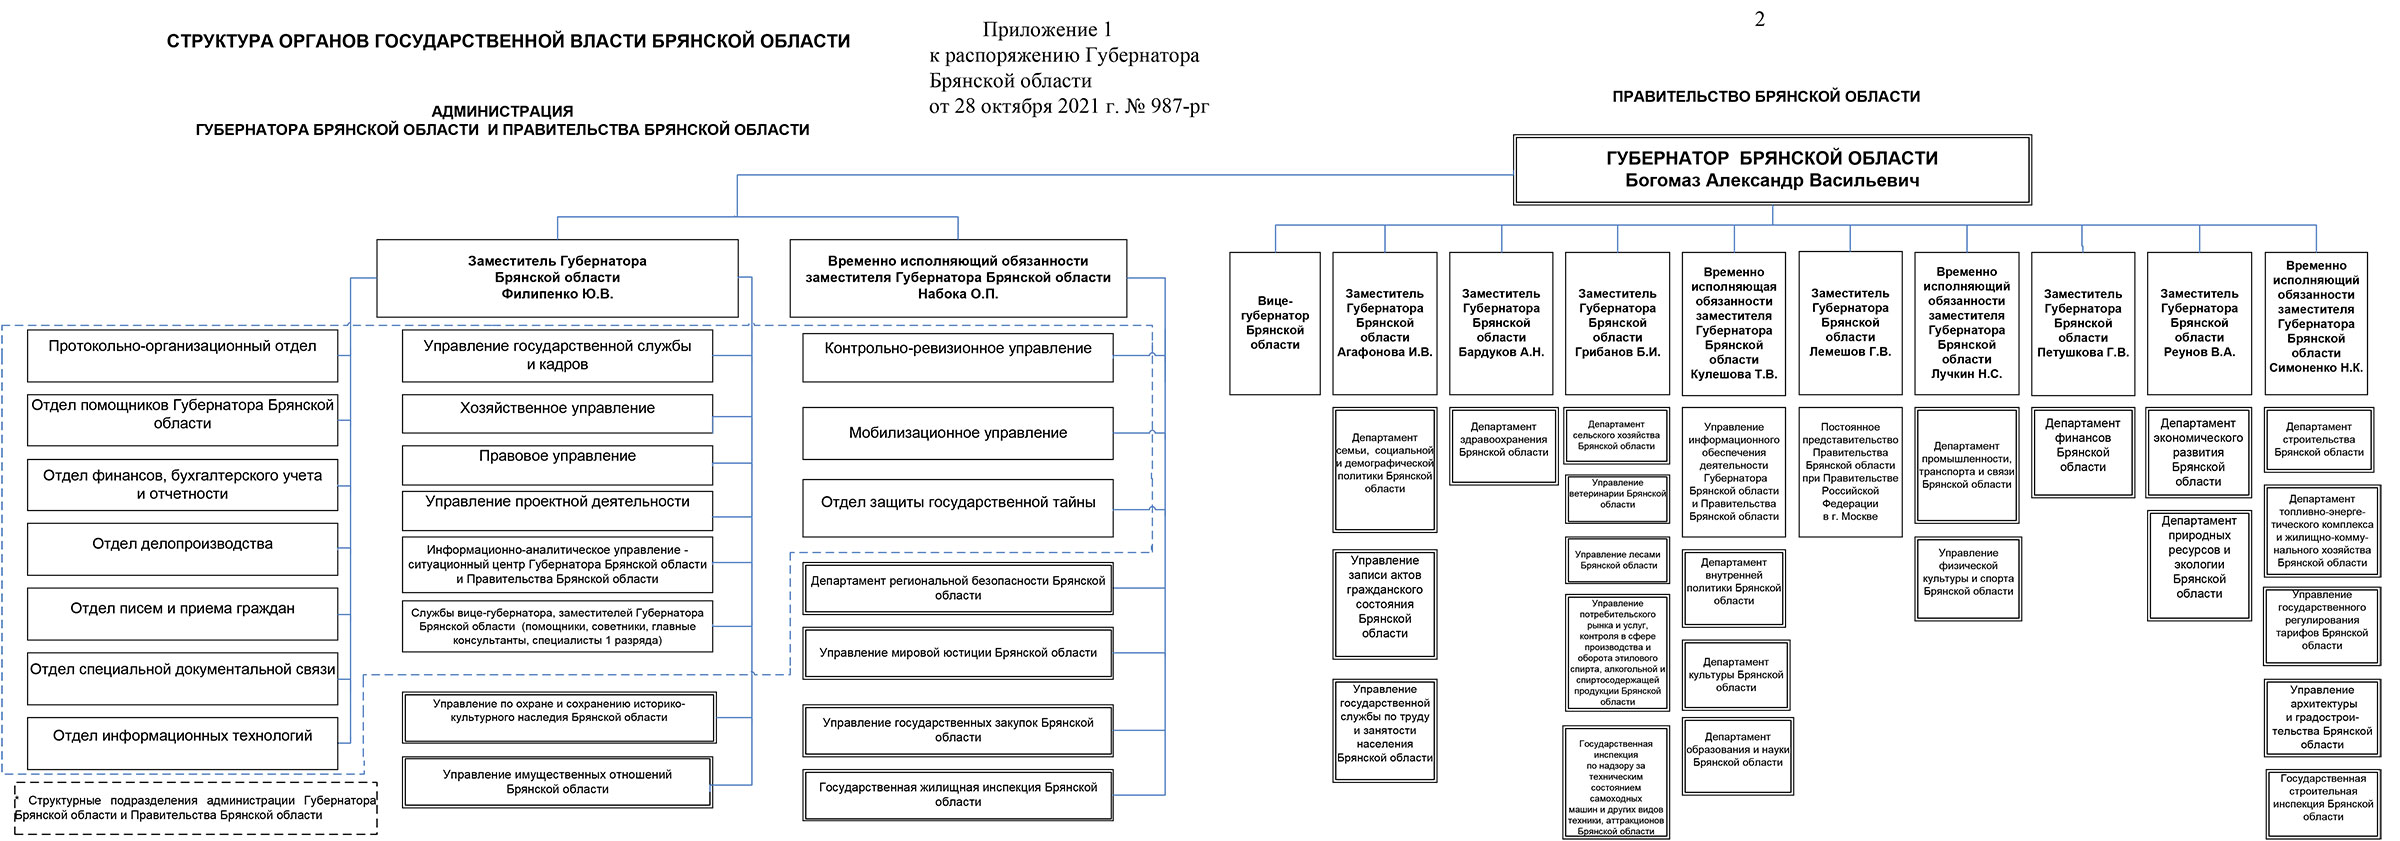 Структура органов Государственной власти Брянской области